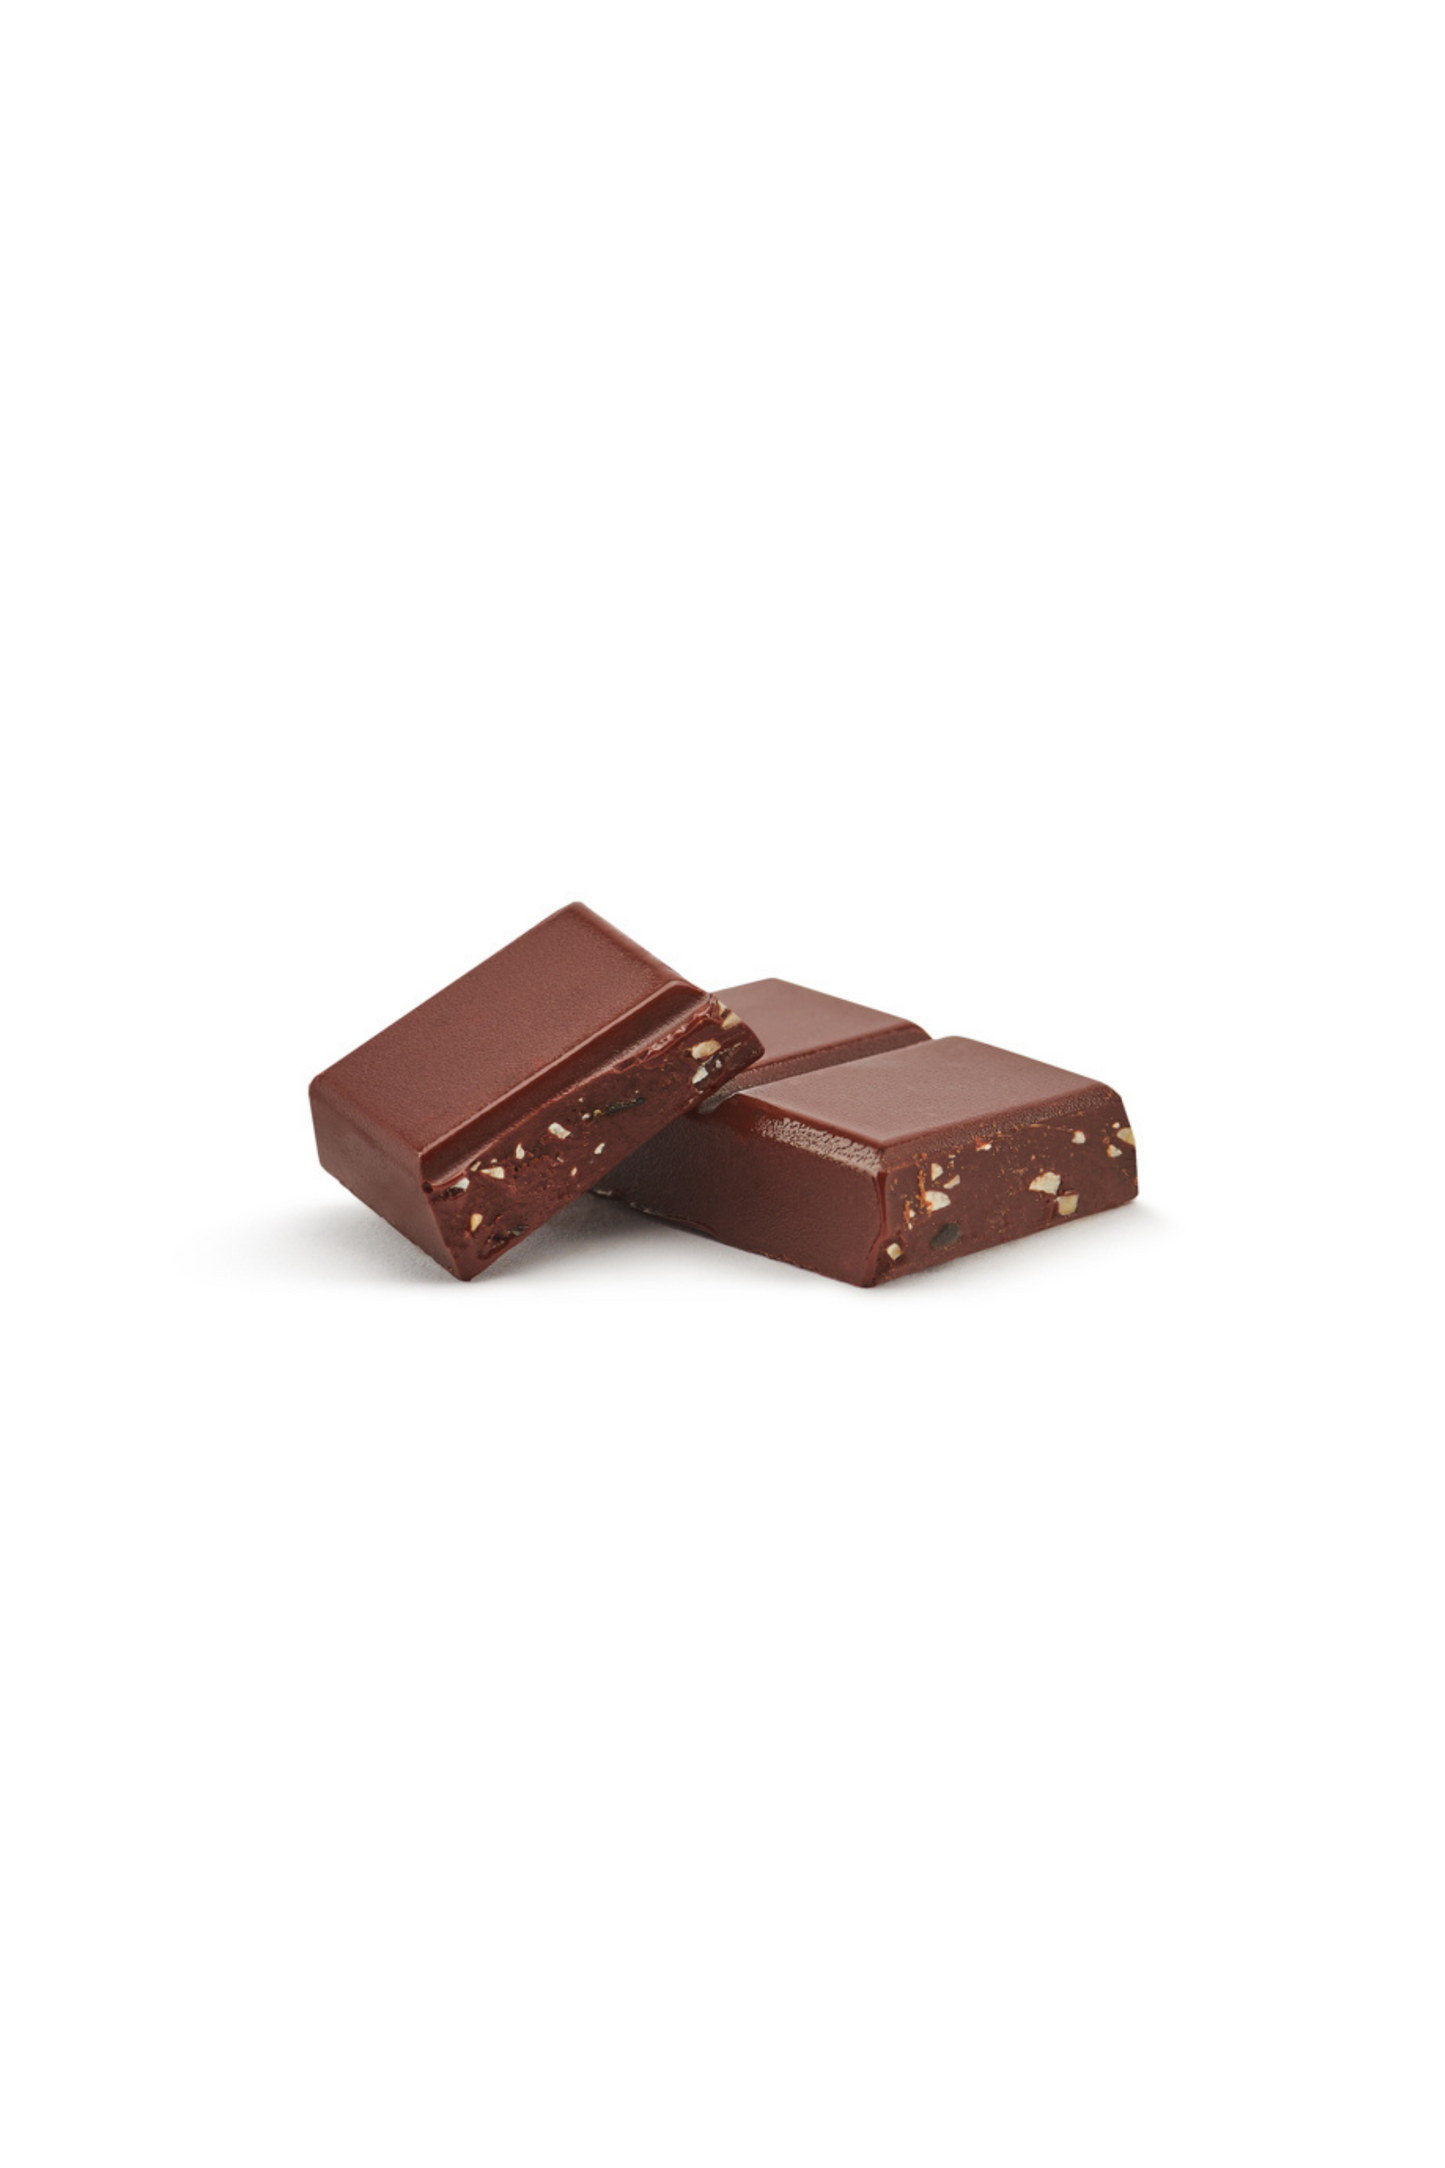 Kürbiskern Zartbitterschokolade, ohne Zuckerzusatz. 70% Kakaoanteil. Vegan. Bean-to-Bar